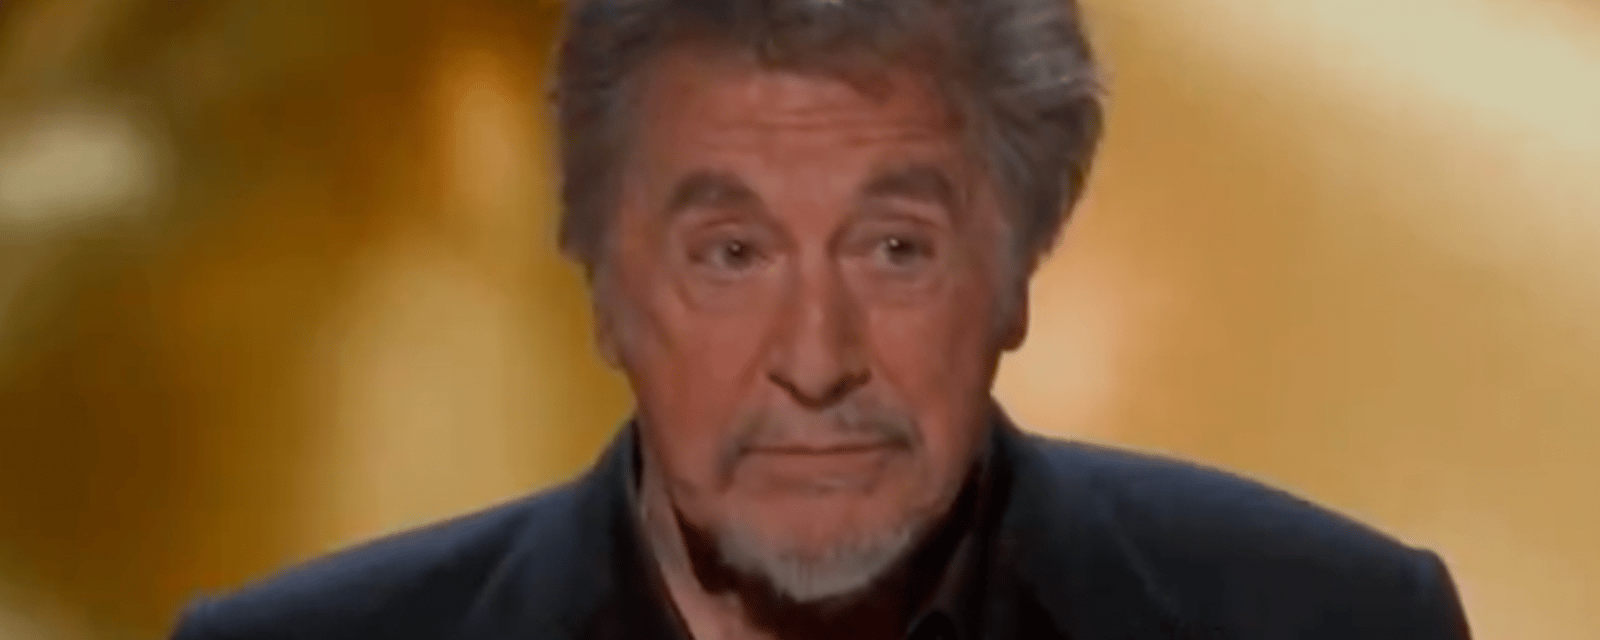 La cérémonie des Oscars se termine dans la confusion après le passage d'Al Pacino